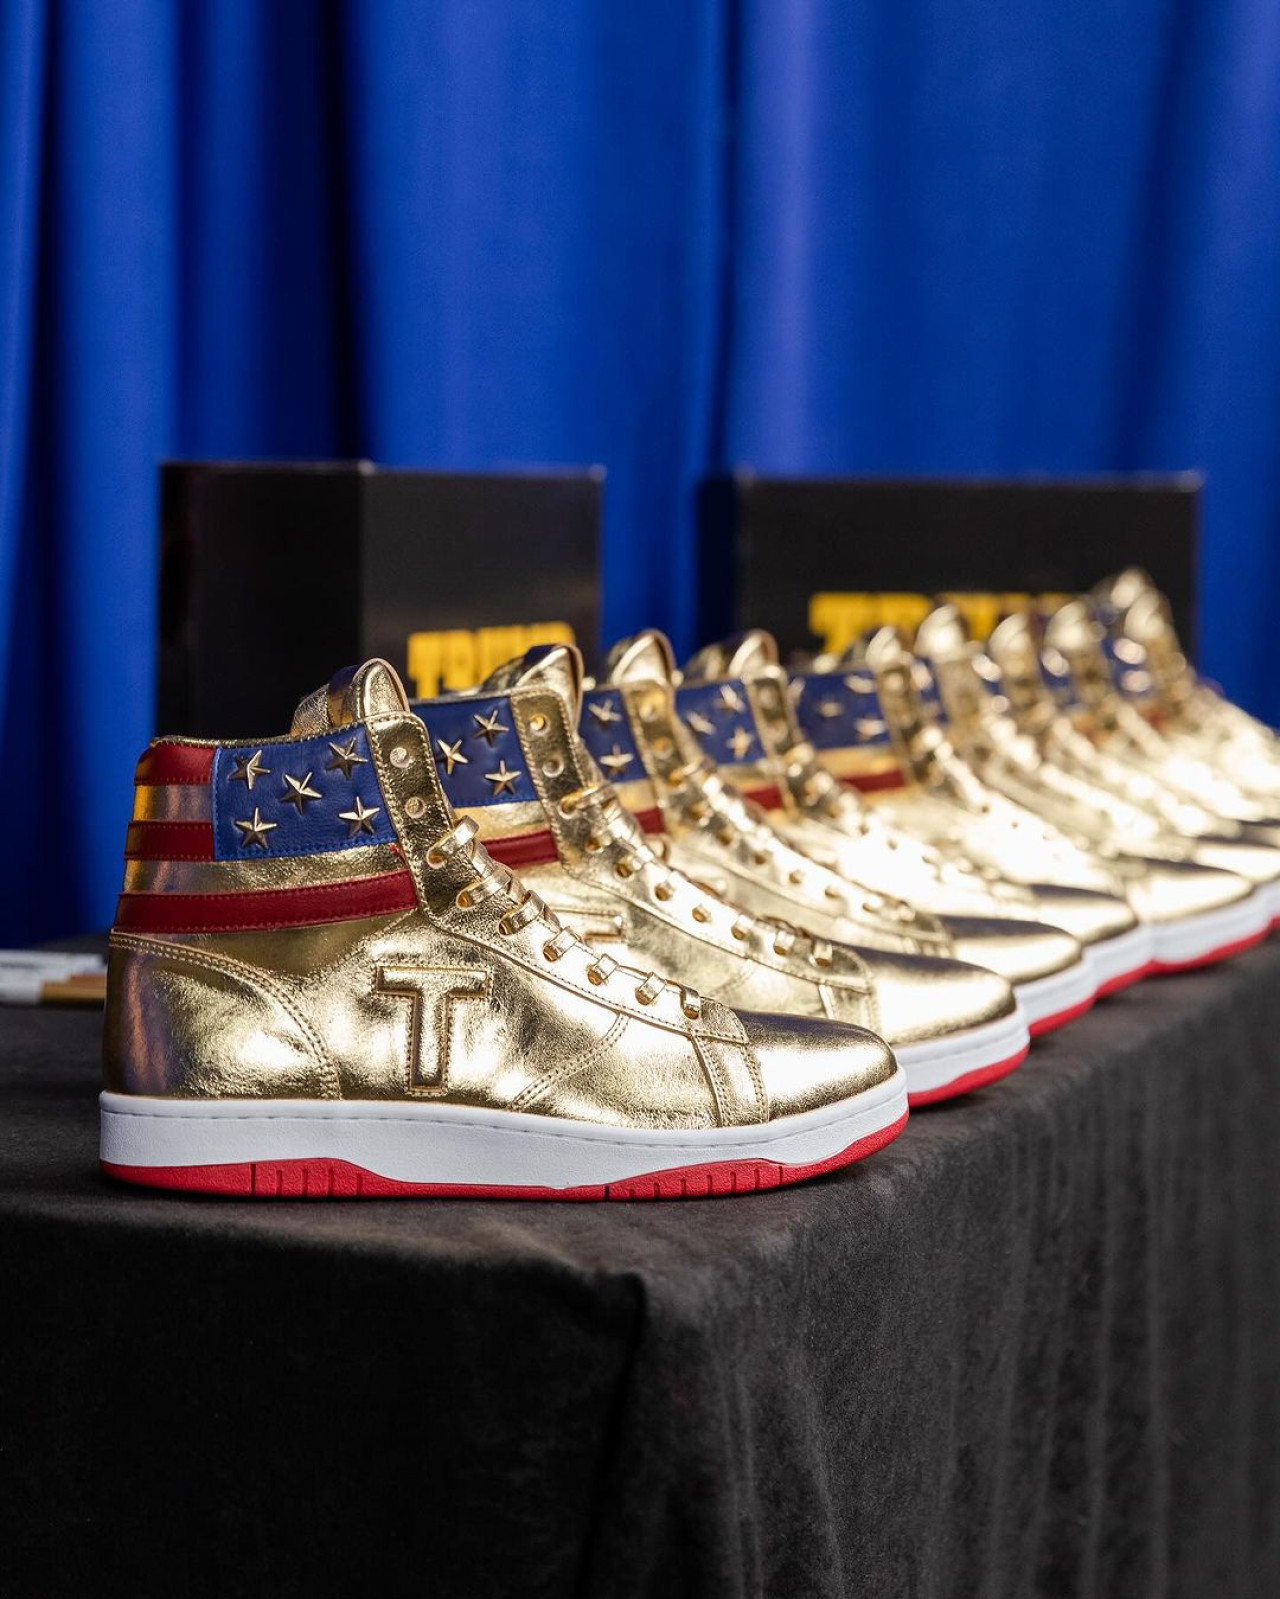 Las zapatillas de Donald Trump. Foto: Instagram @sneakercon